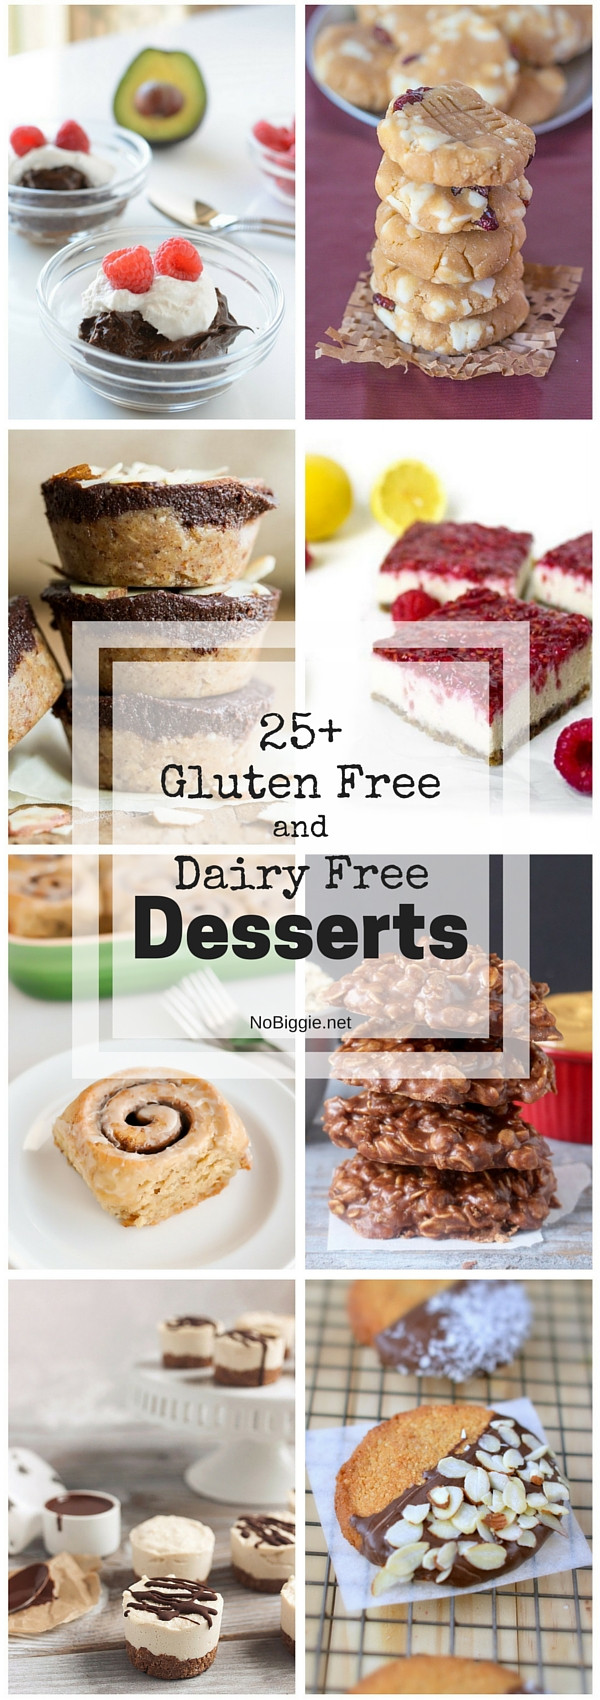 Gluten Dairy Free Desserts
 25 Gluten Free and Dairy Free Desserts